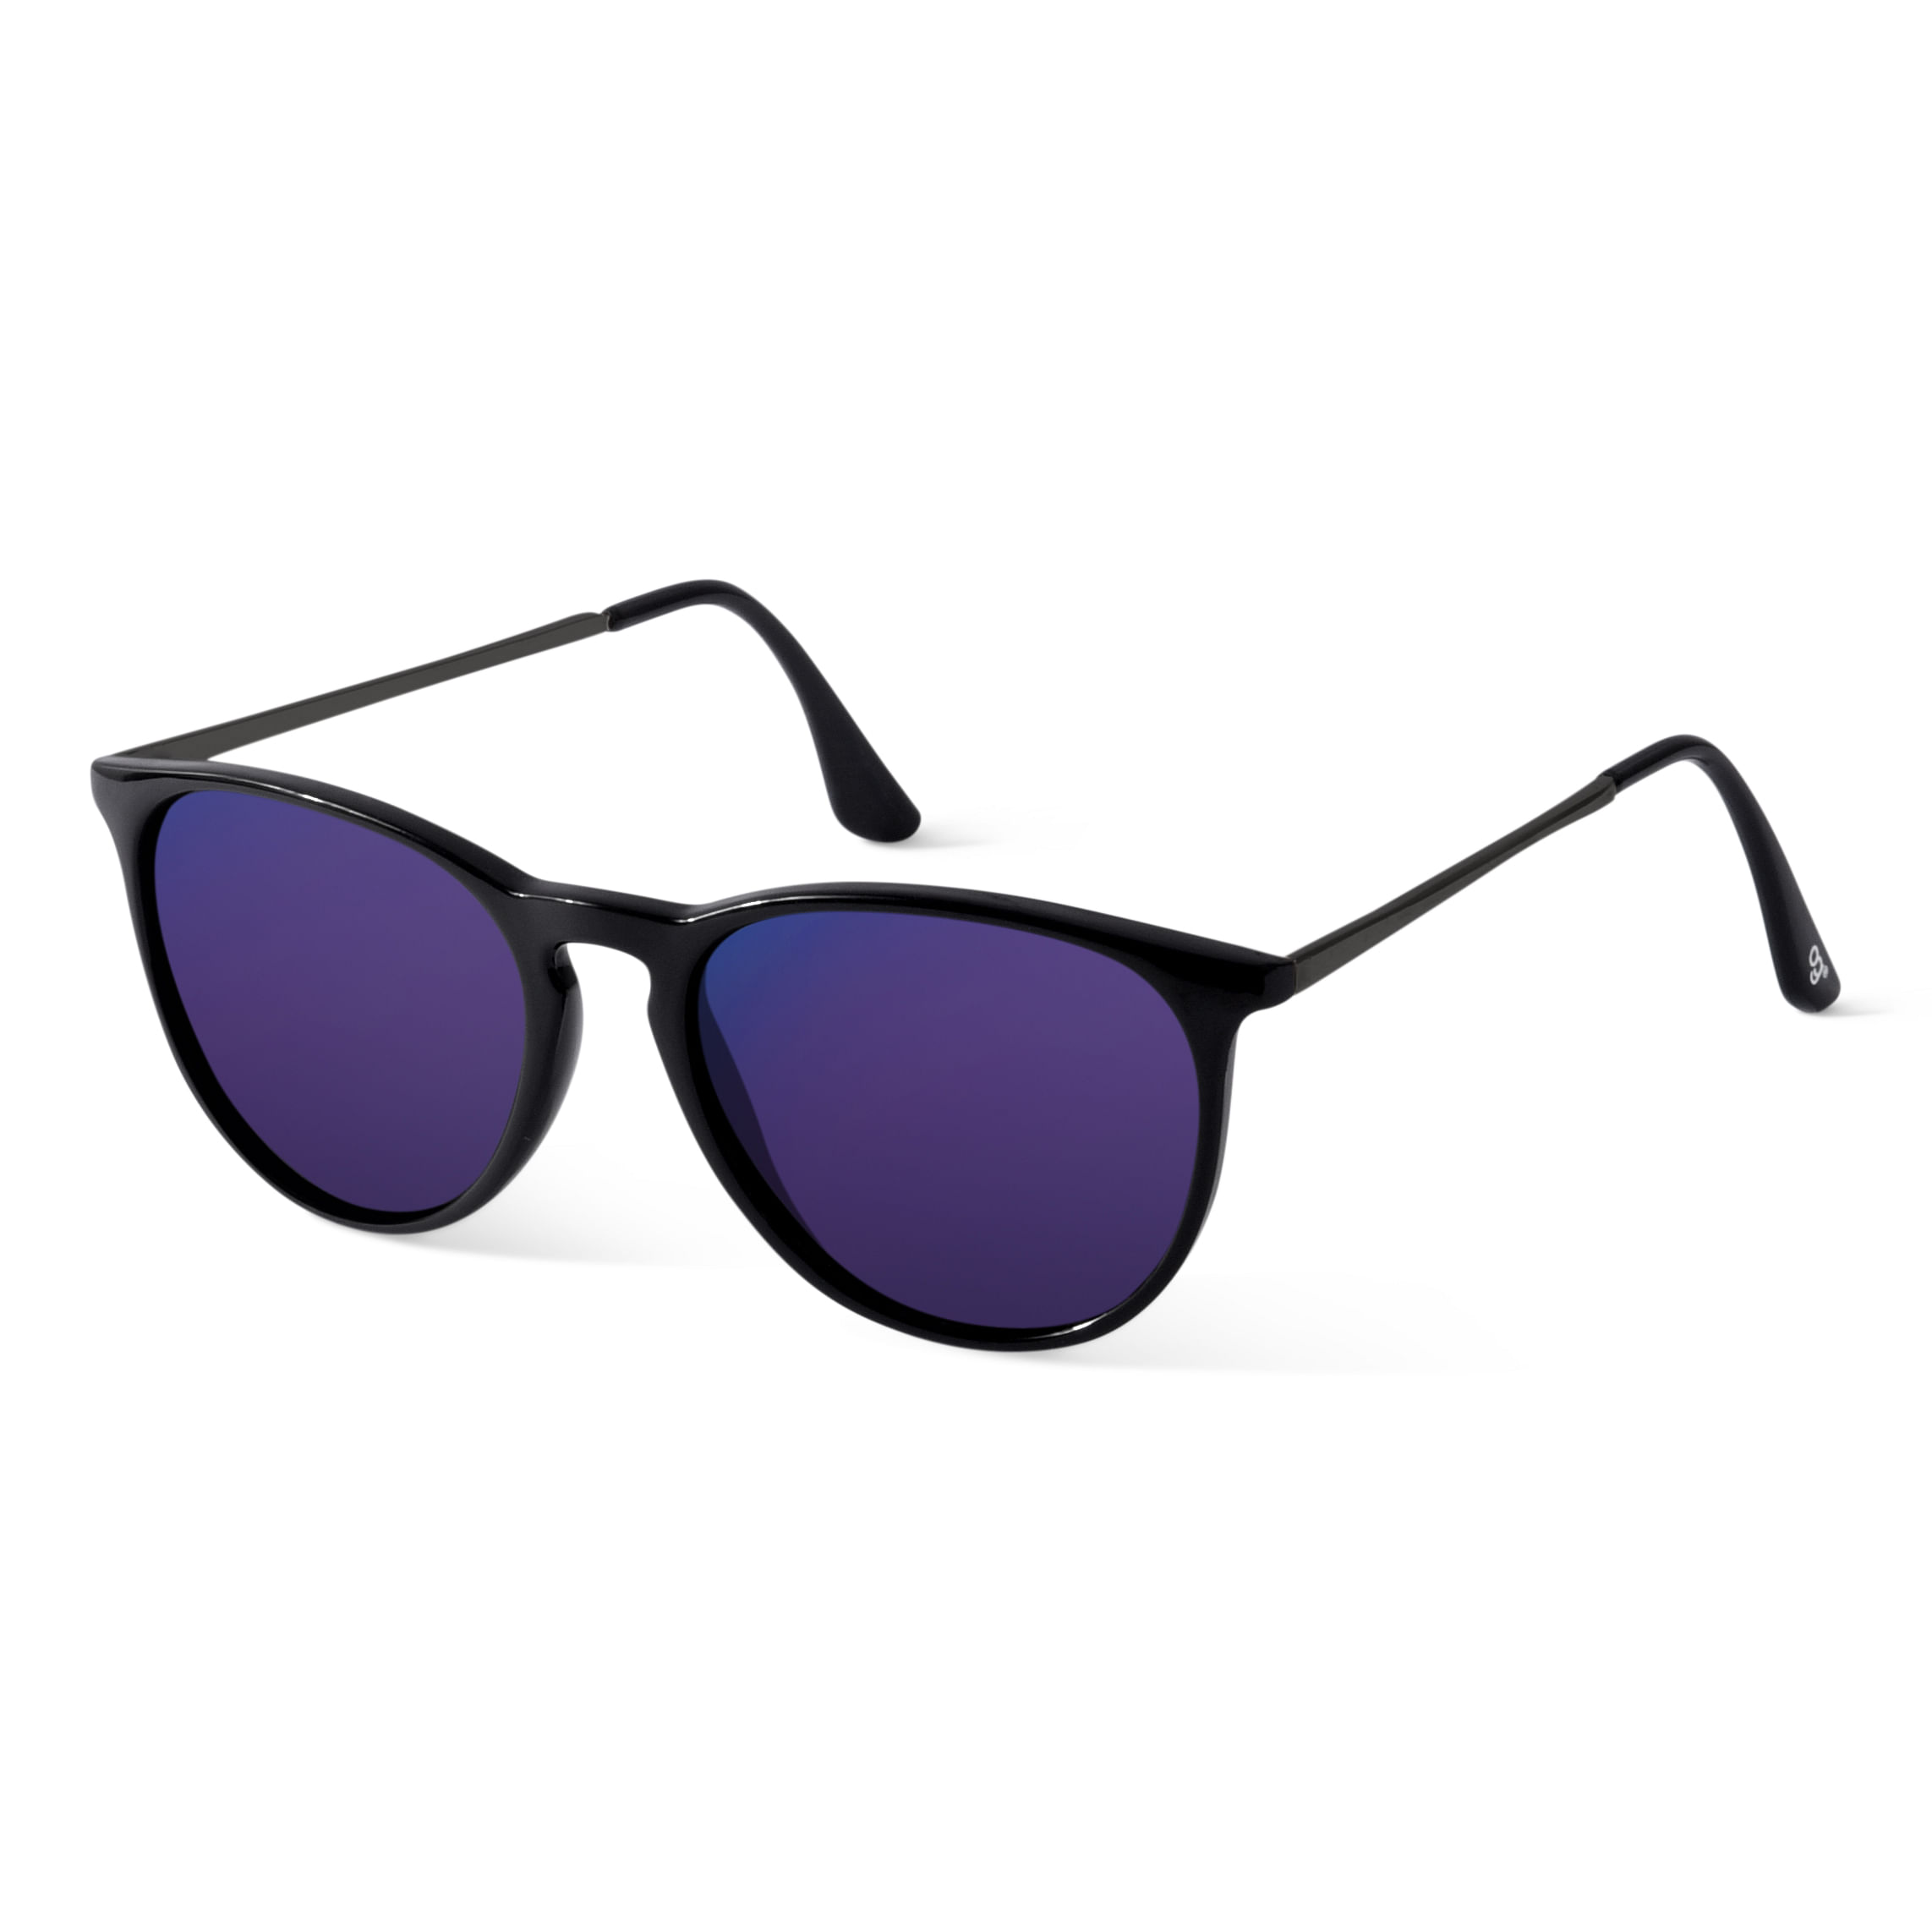 Rhode Island Novelty Round Colored Lens Sunglasses, India | Ubuy